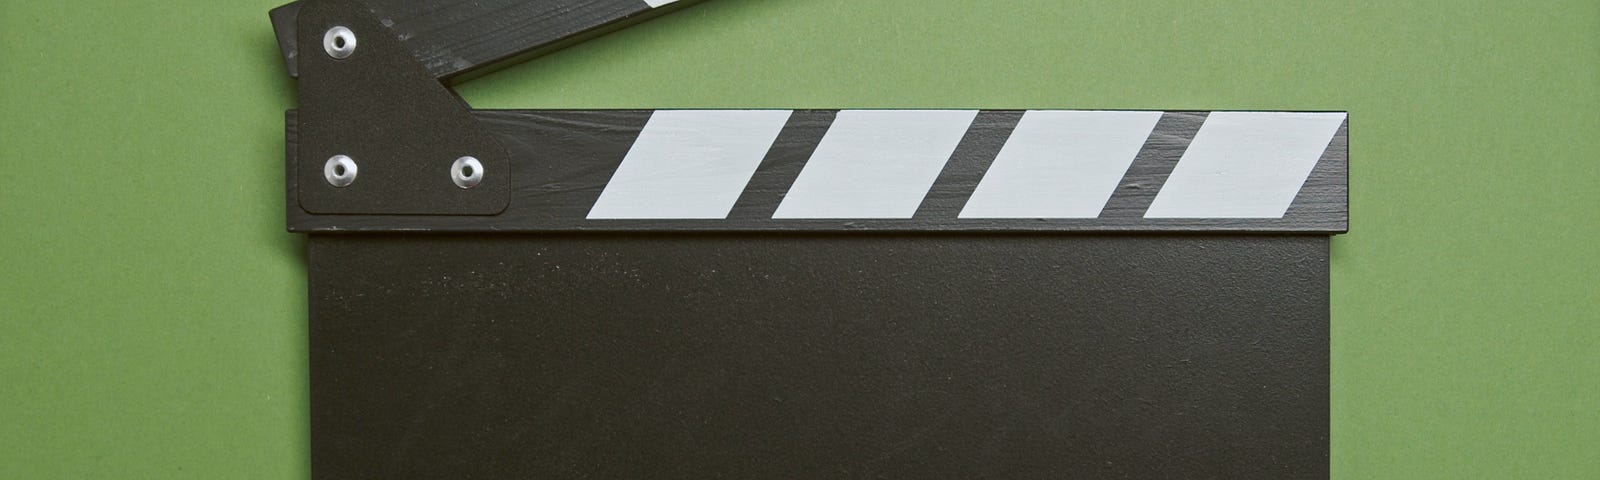 A close-up of a clapper board.